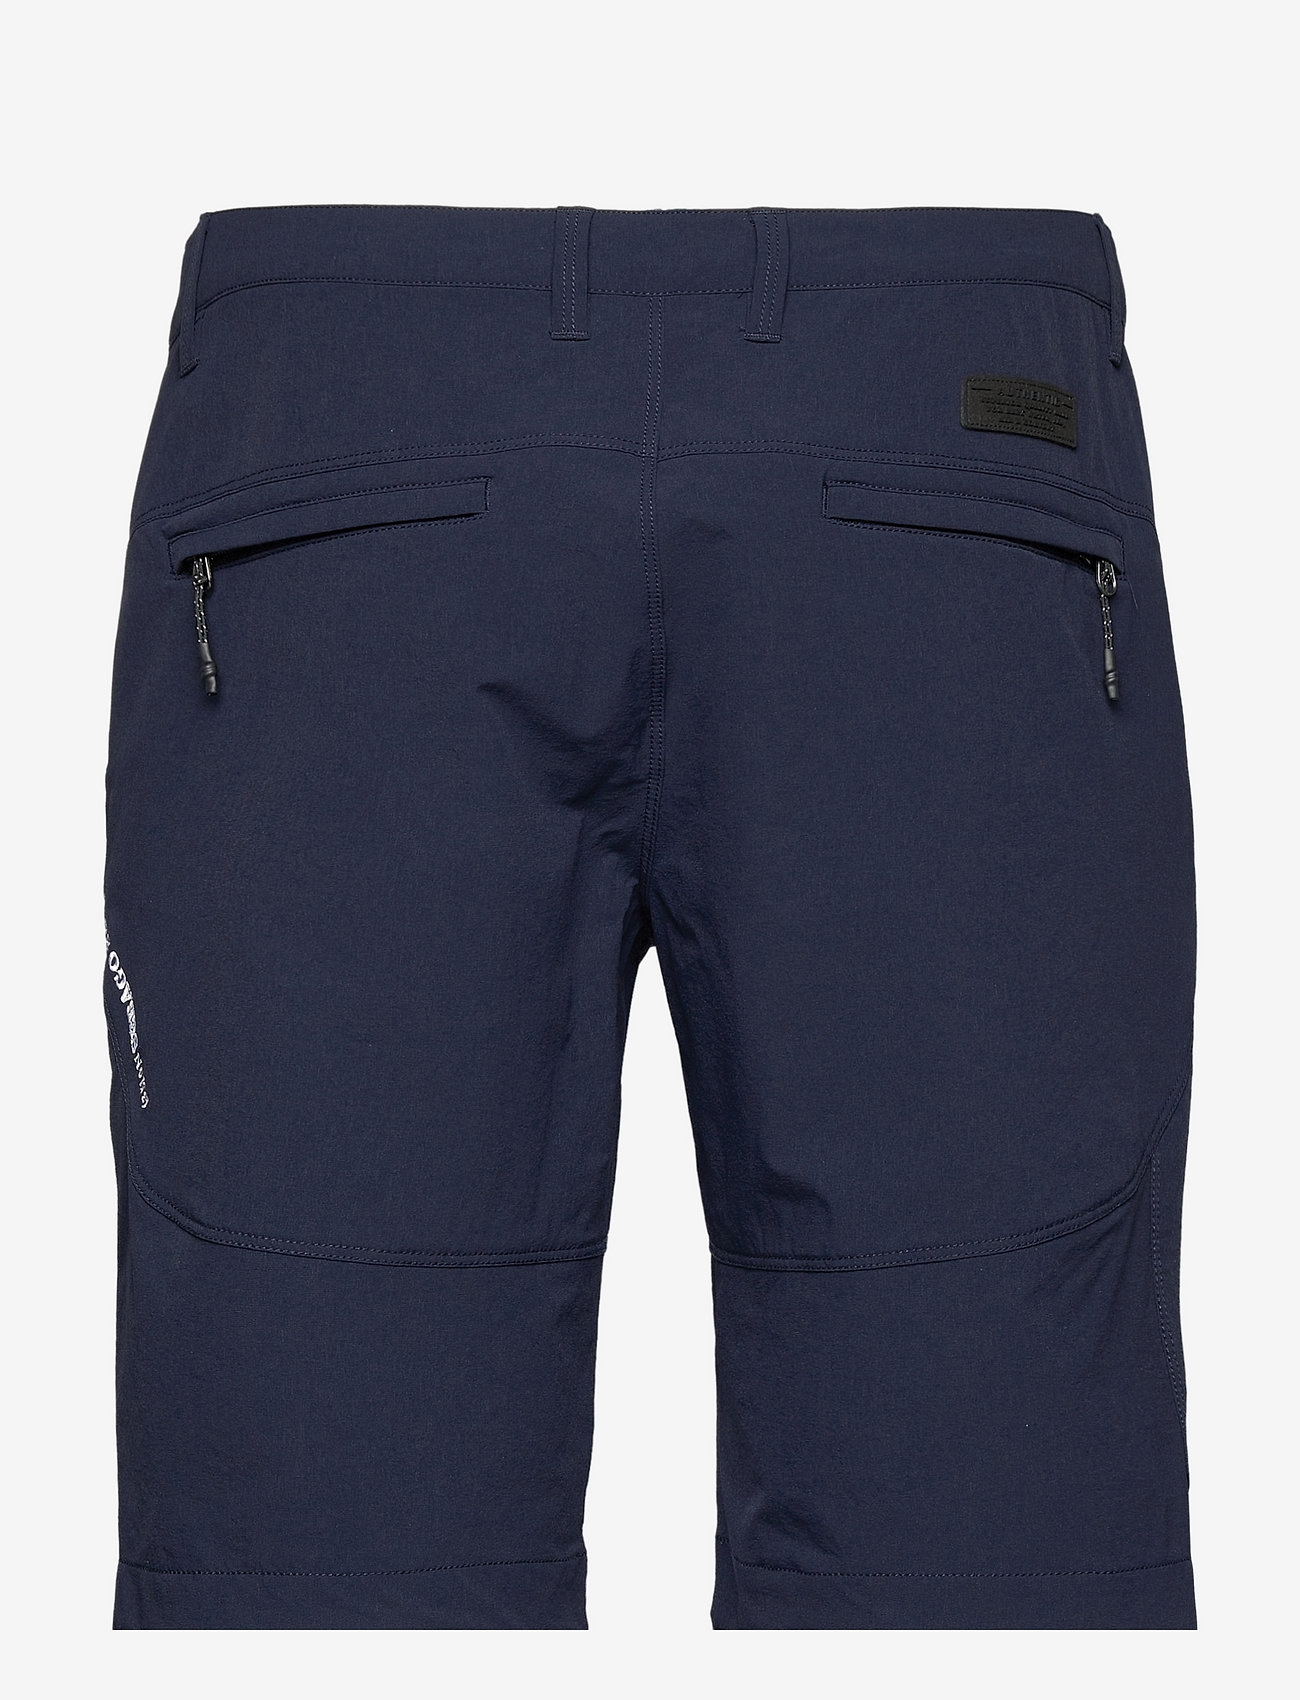 Sebago - Performance Shorts - casual shorts - navy - 1